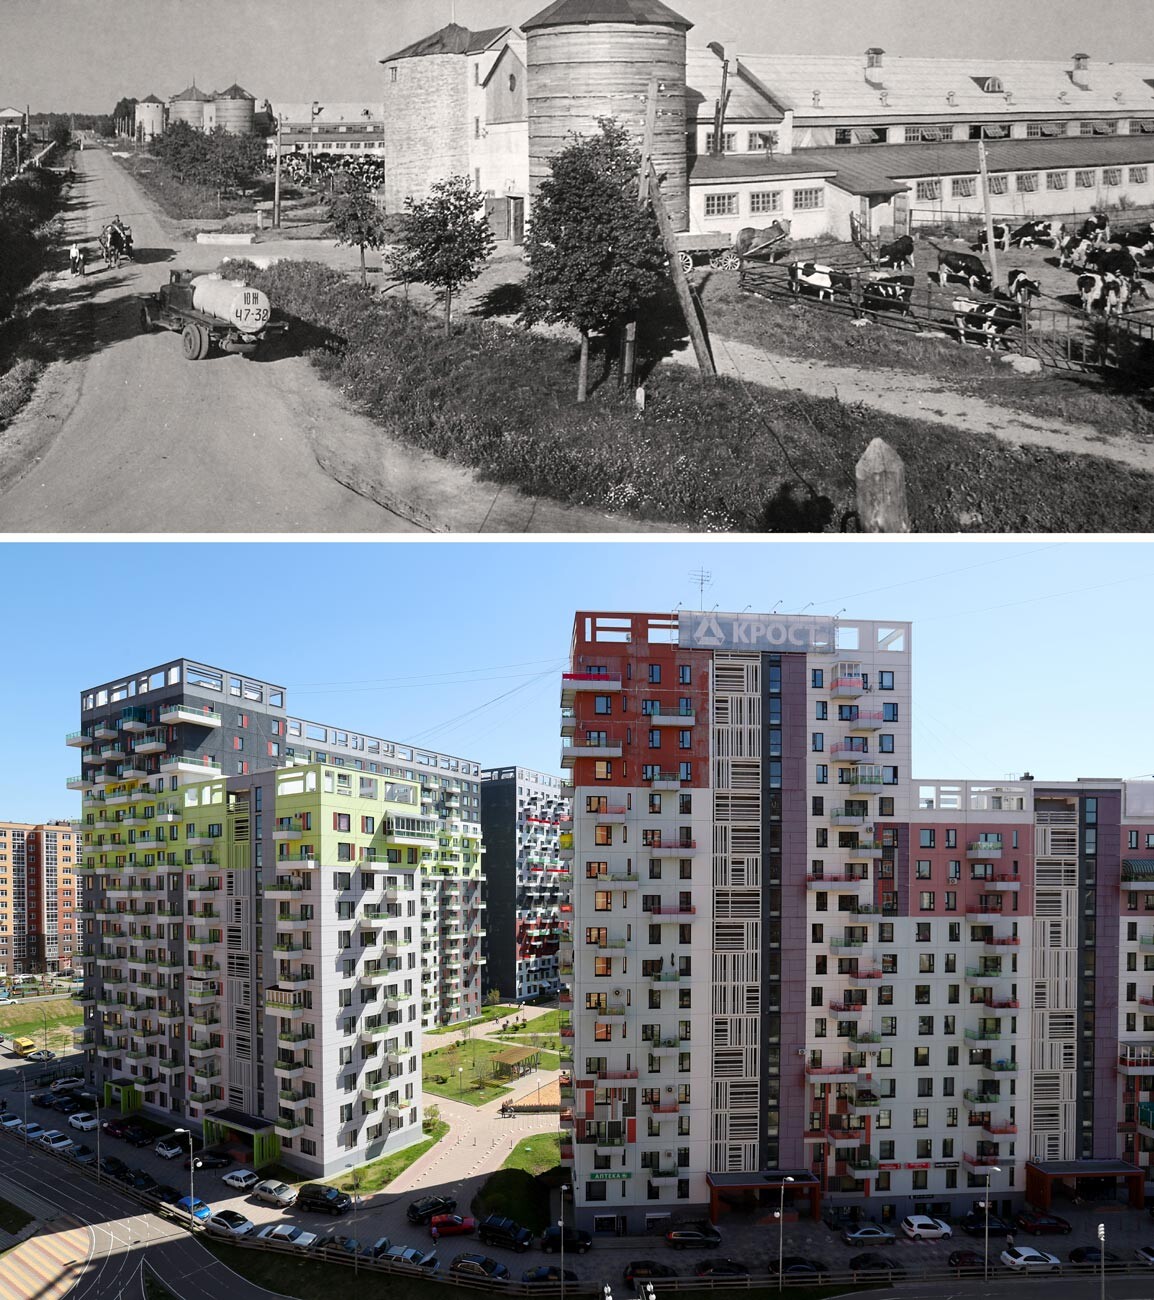 A sinistra: azienda lattiera del Kommunarka sovkhoz, 1968. A destra: un nuovo quartiere residenziale